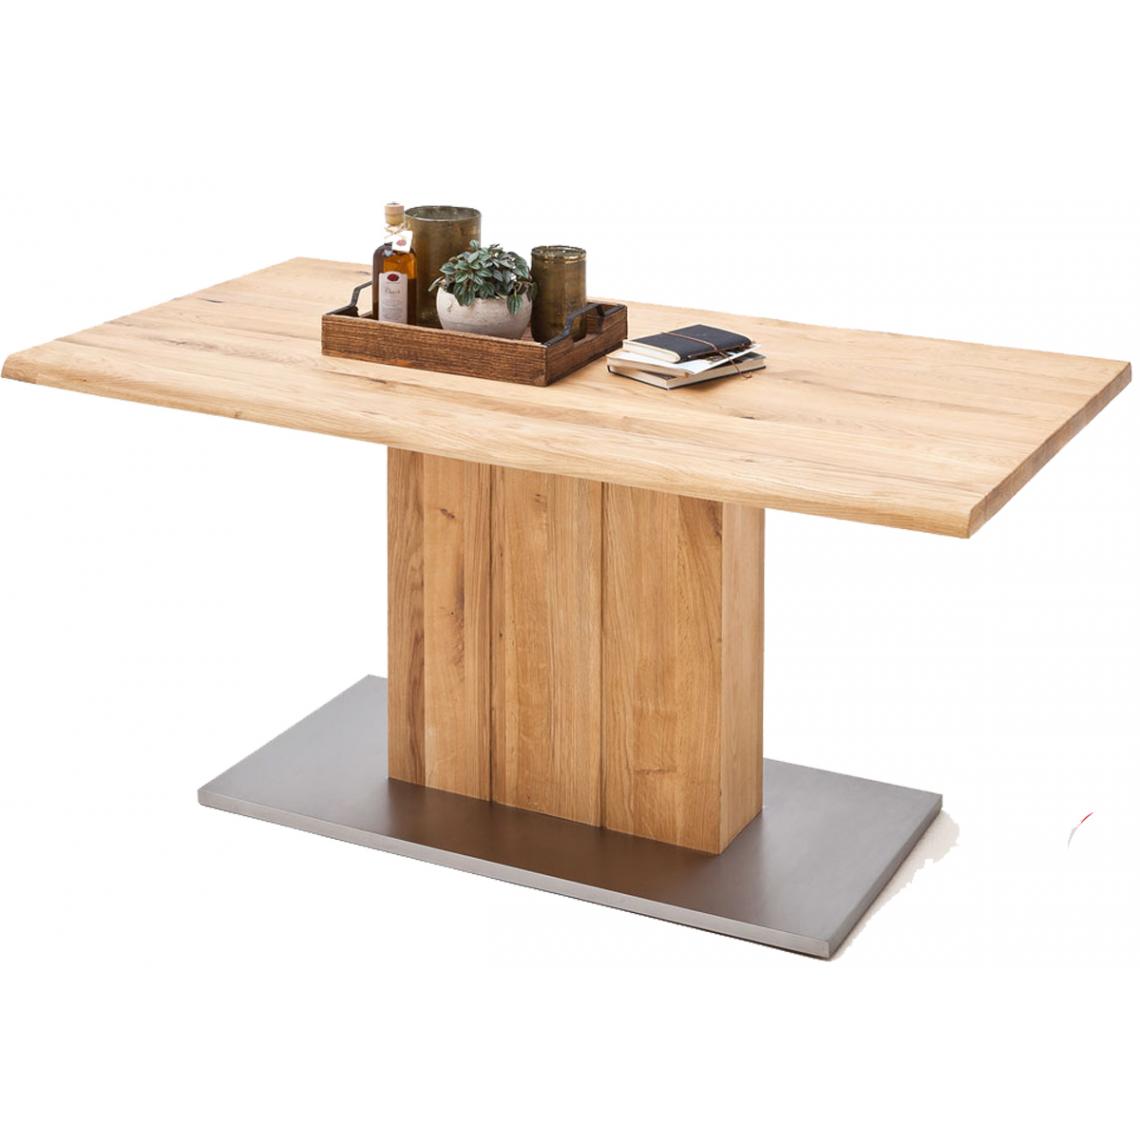 Pegane - Table à manger en chêne massif huilé bord d'arbre - L180 x H77 x P90 cm - Tables à manger